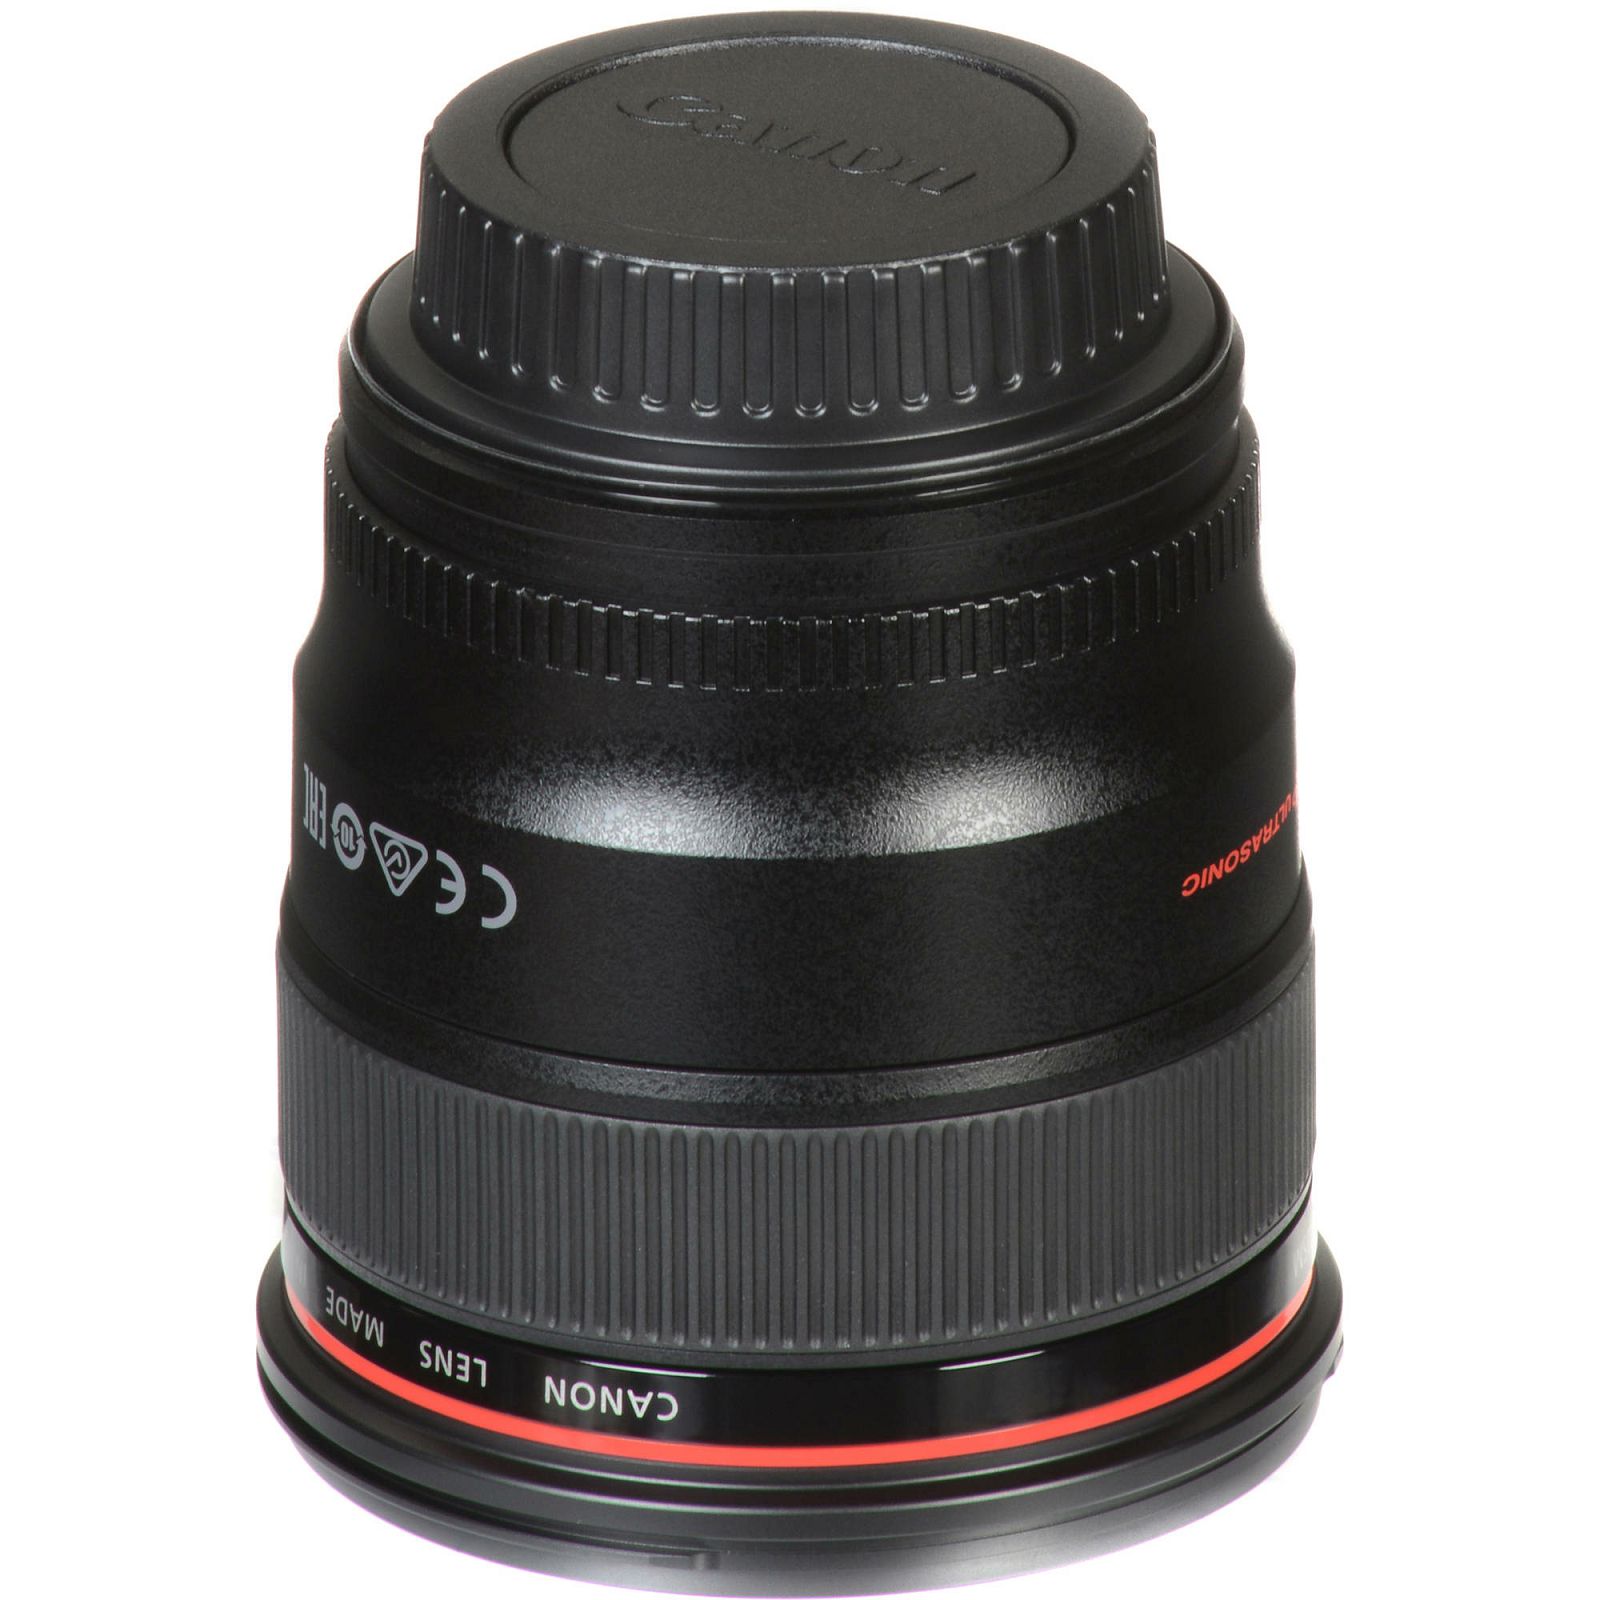 Canon EF 24mm f/1.4 L II USM širokokutni objektiv prime lens f/1.4L F1.4 f/1,4 1.4 1:1.4 (2750B005AA)